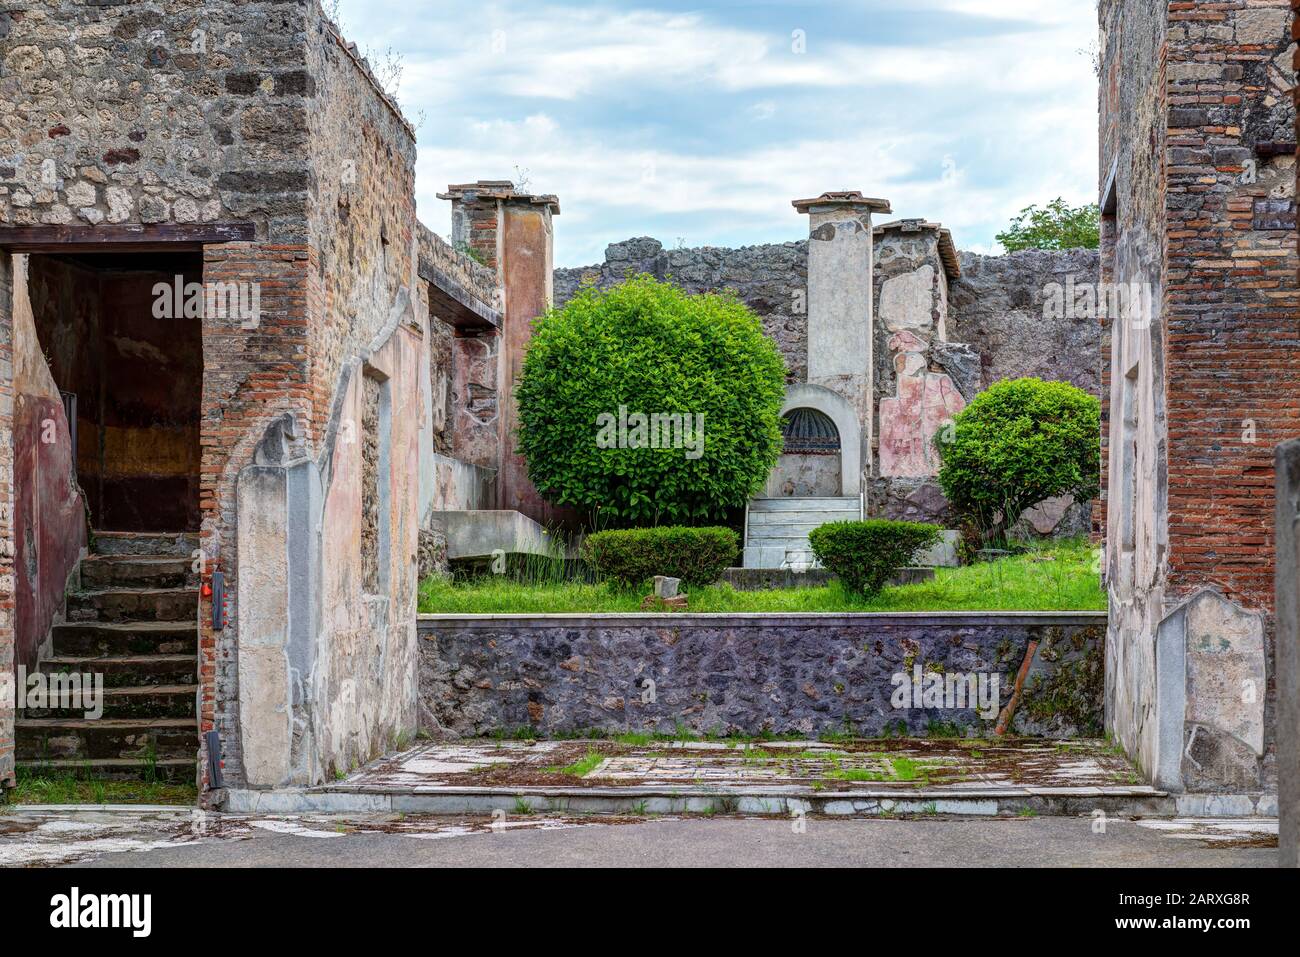 Ruinen eines Hauses in Pompeji; Italien. Pompeji ist eine antike römische Stadt, die durch den Ausbruch des Vesuvs im Jahr 79 n. Chr. starb. Stockfoto